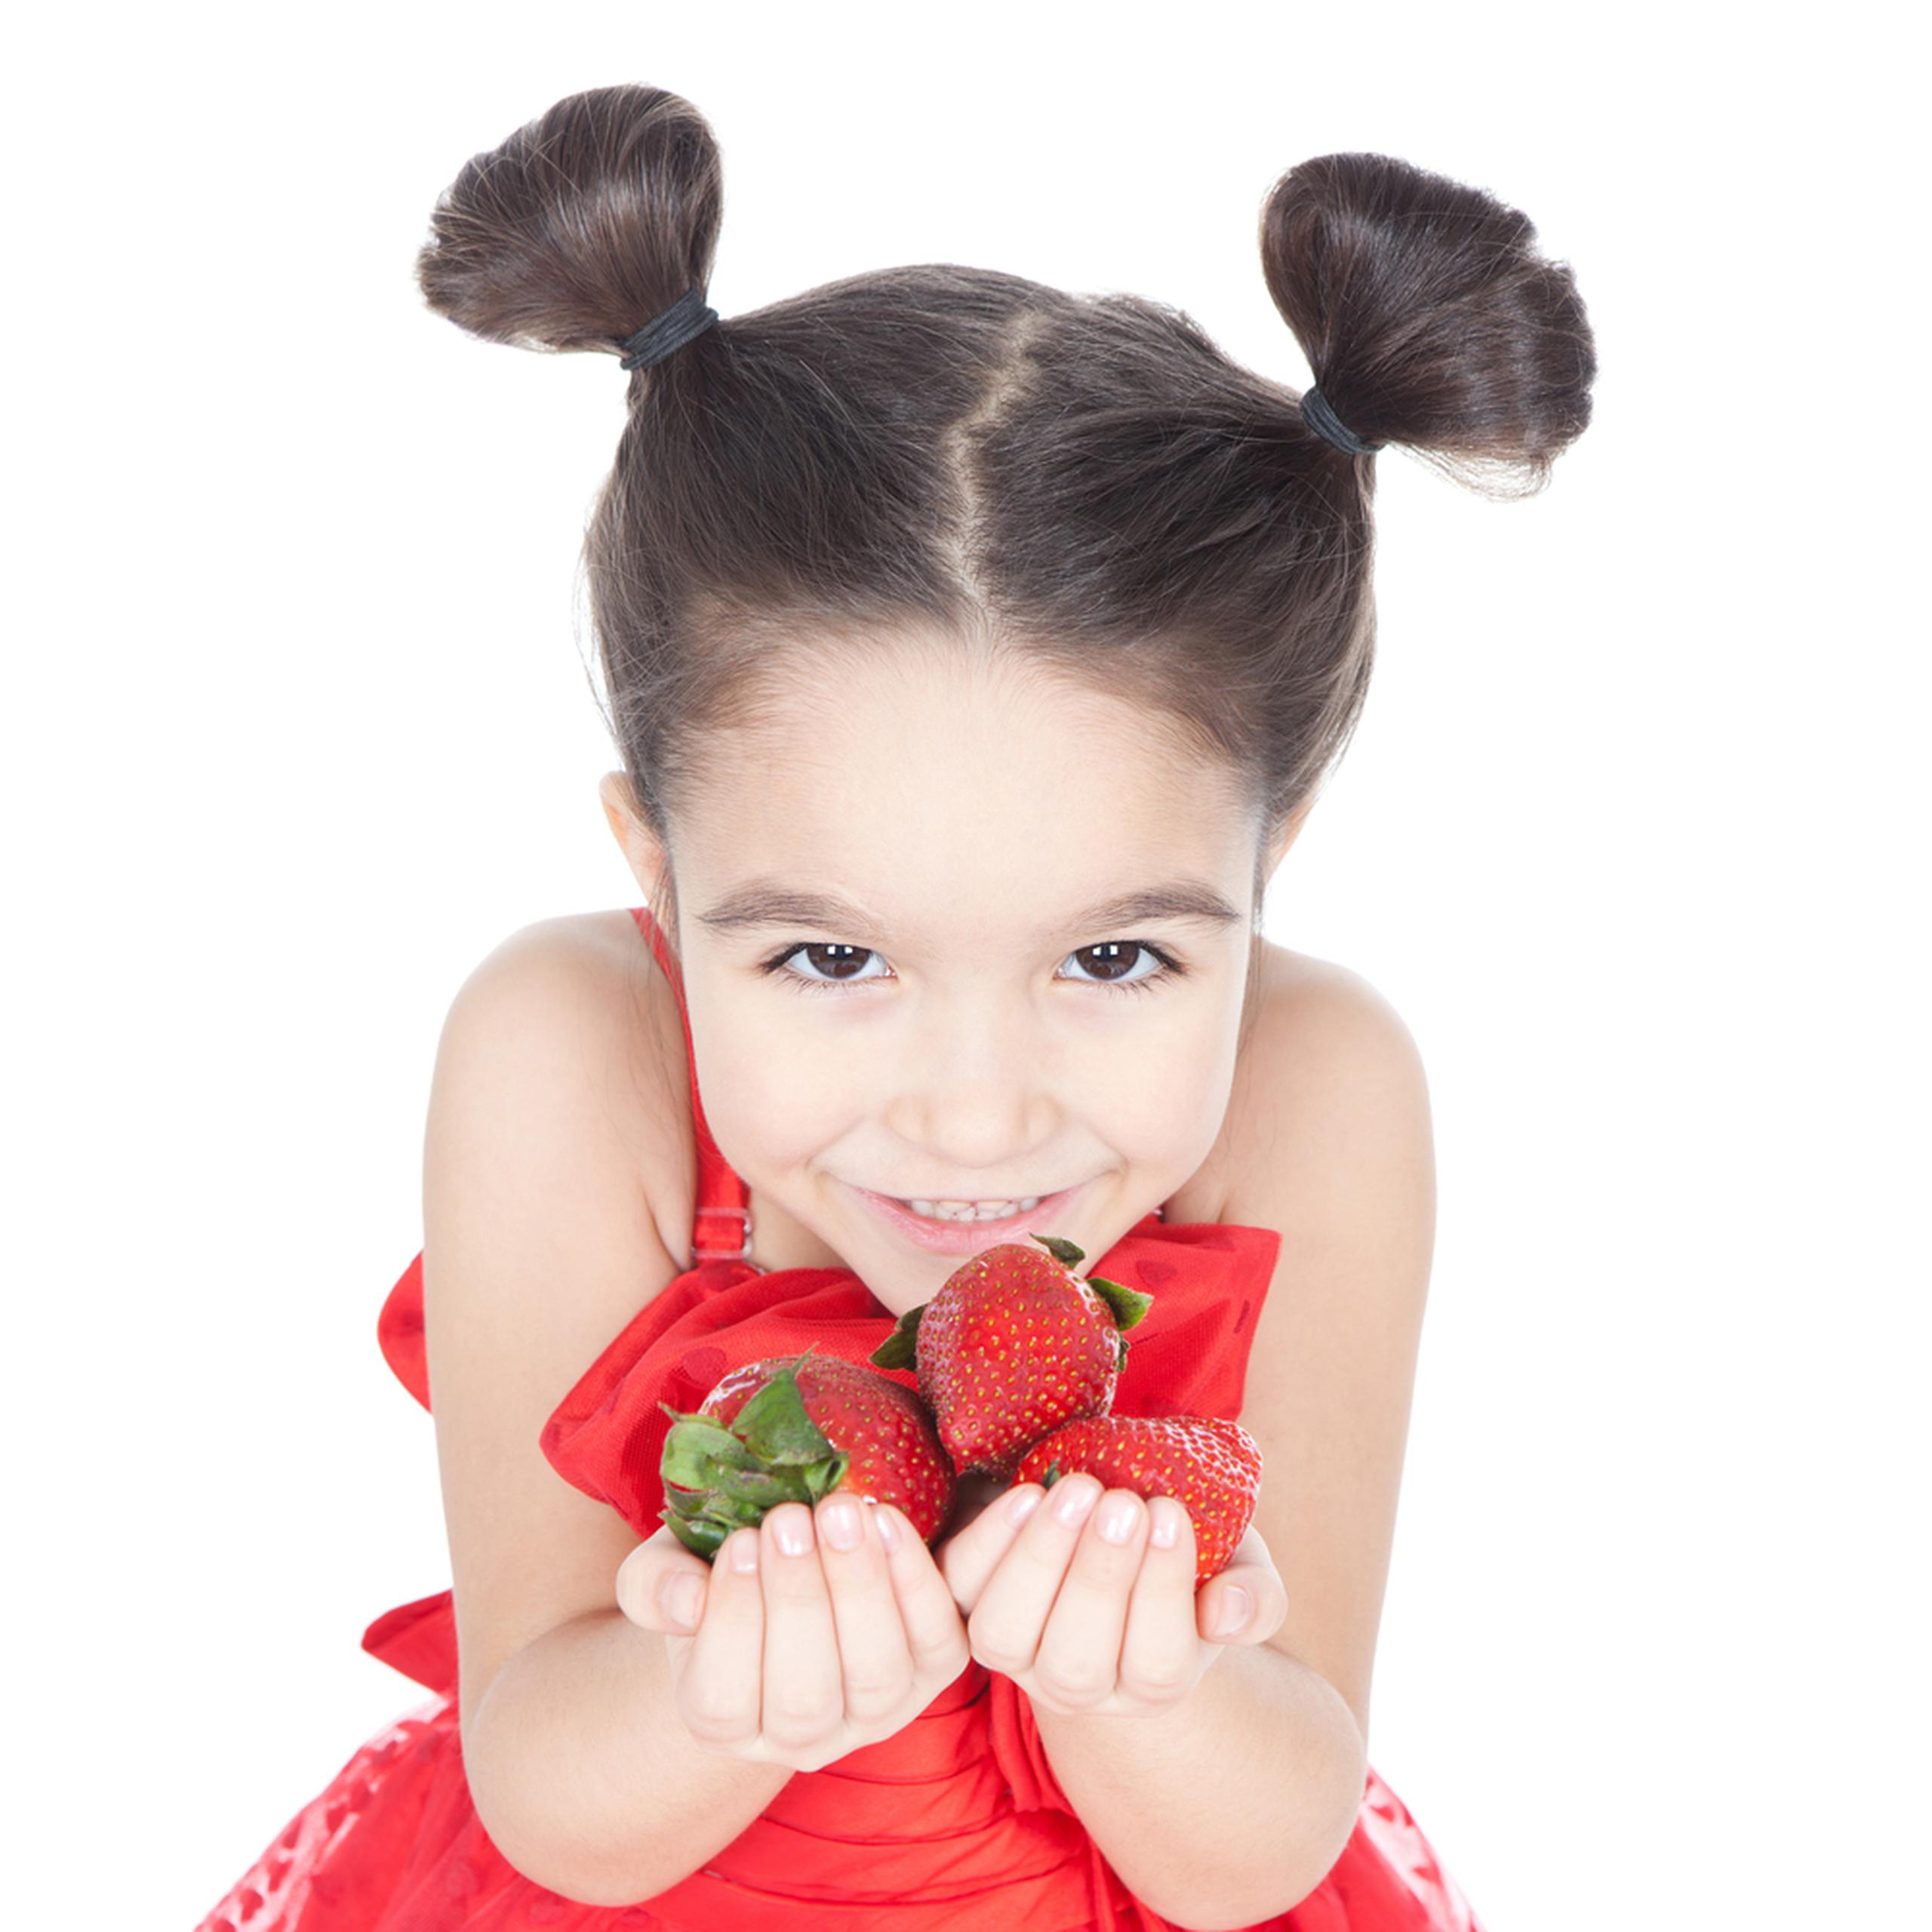 La intervención nutricional temprana mejora el desarrollo cognitivo y la capacidad de atención.